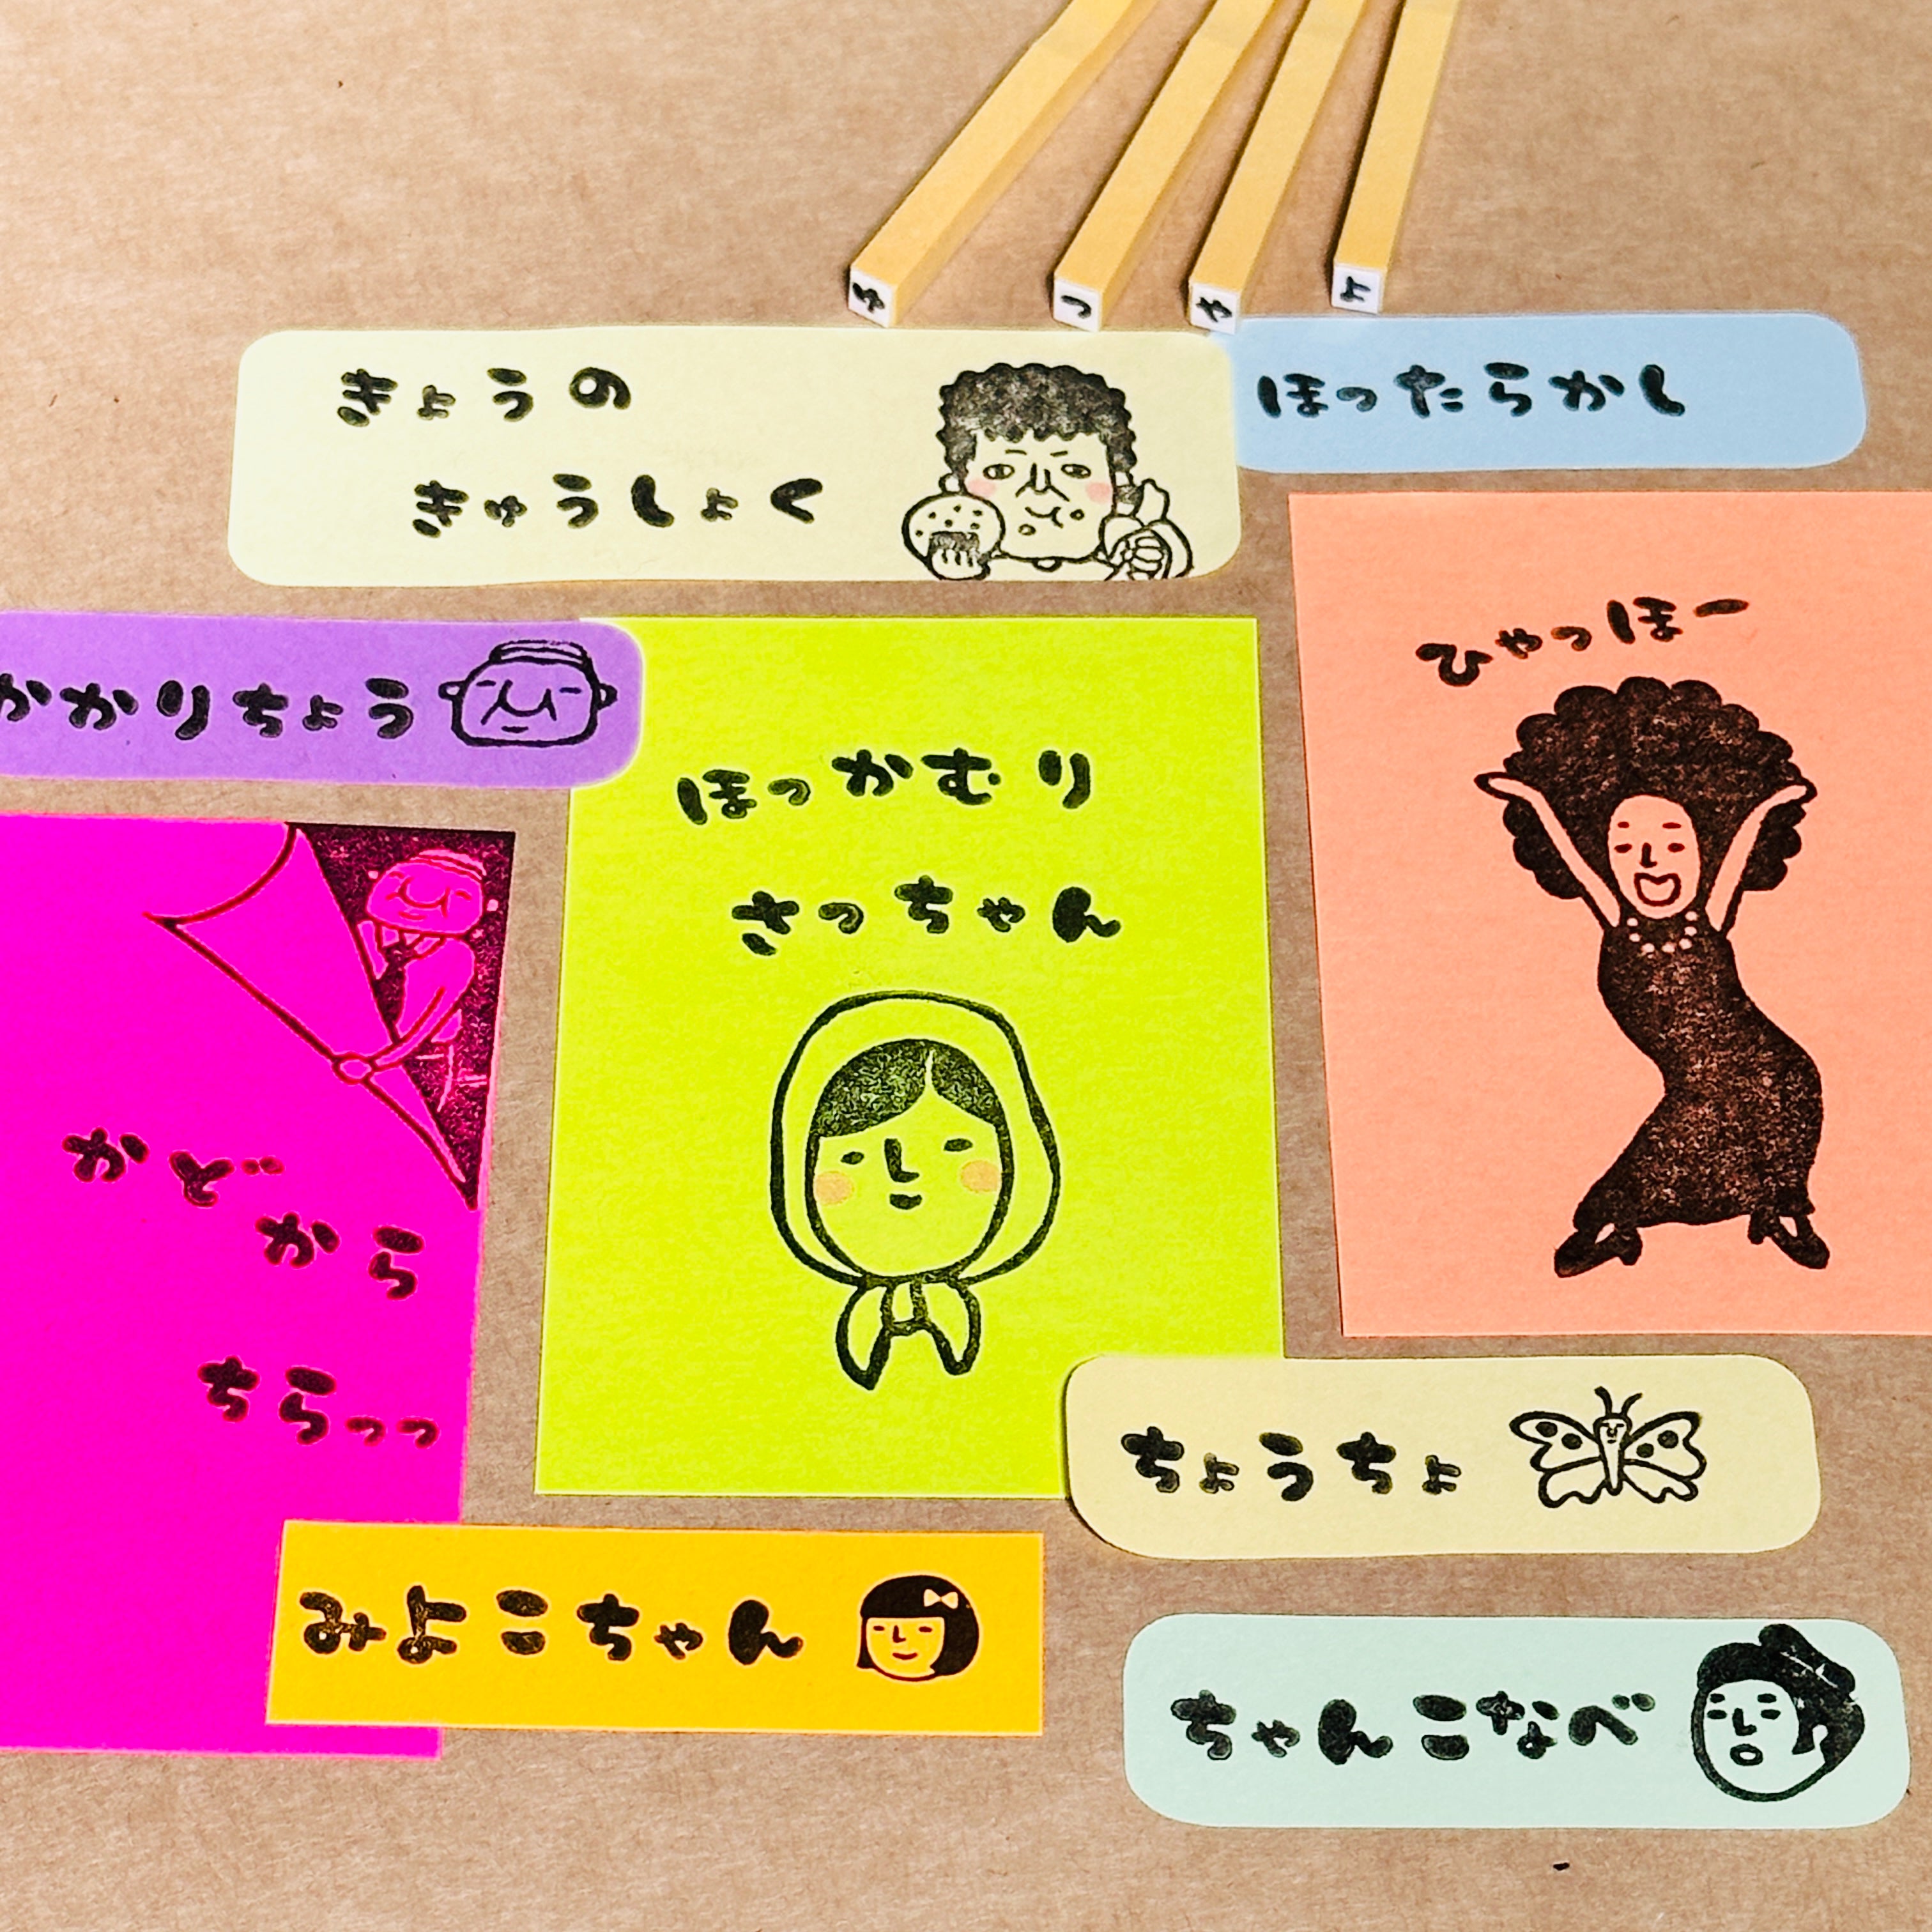 Rira Characters Hiragana 50 Sounds Set (Boxed)